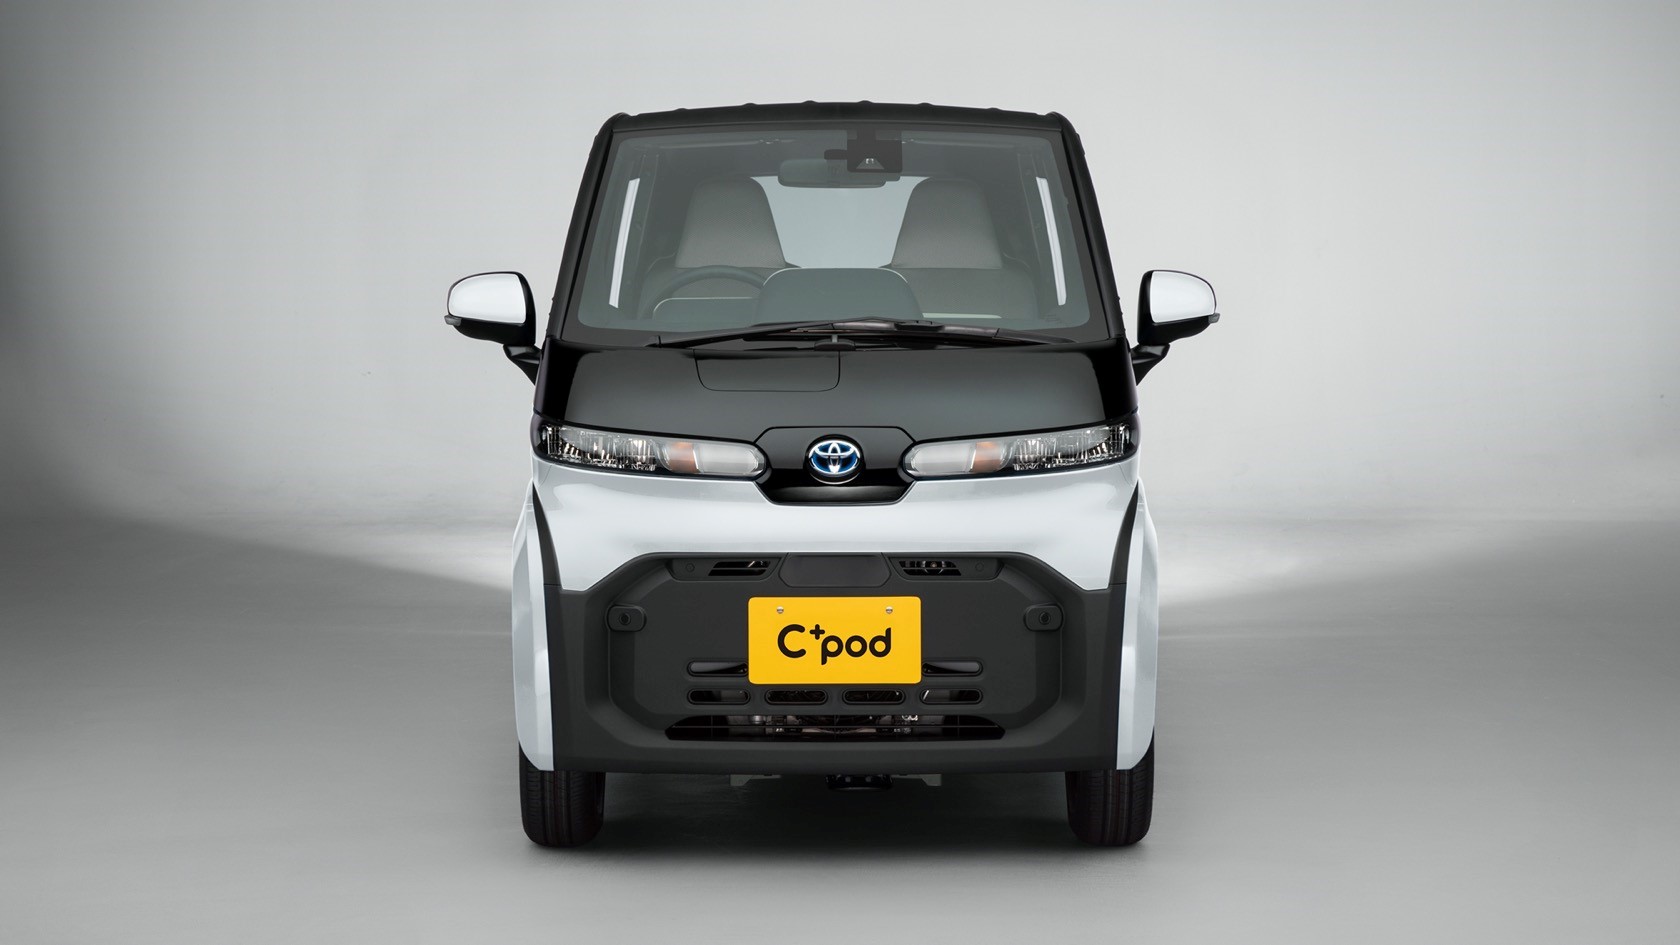 丰田C+pod是一款面临巨大挑战的小型电动汽车